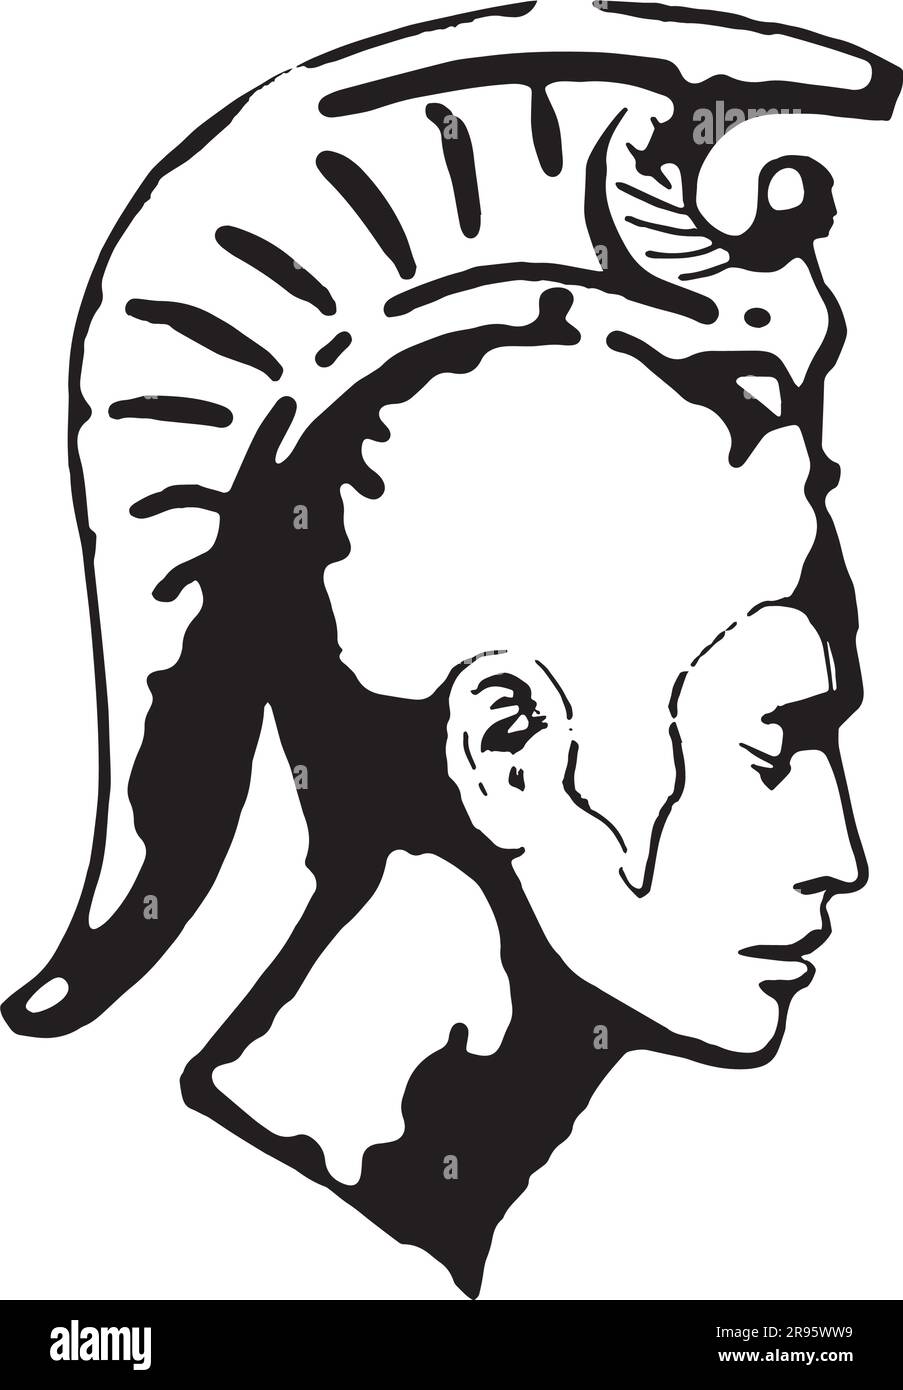 Profil de tête de casque Corinthien ou Spartan - illustrations en noir et blanc Illustration de Vecteur